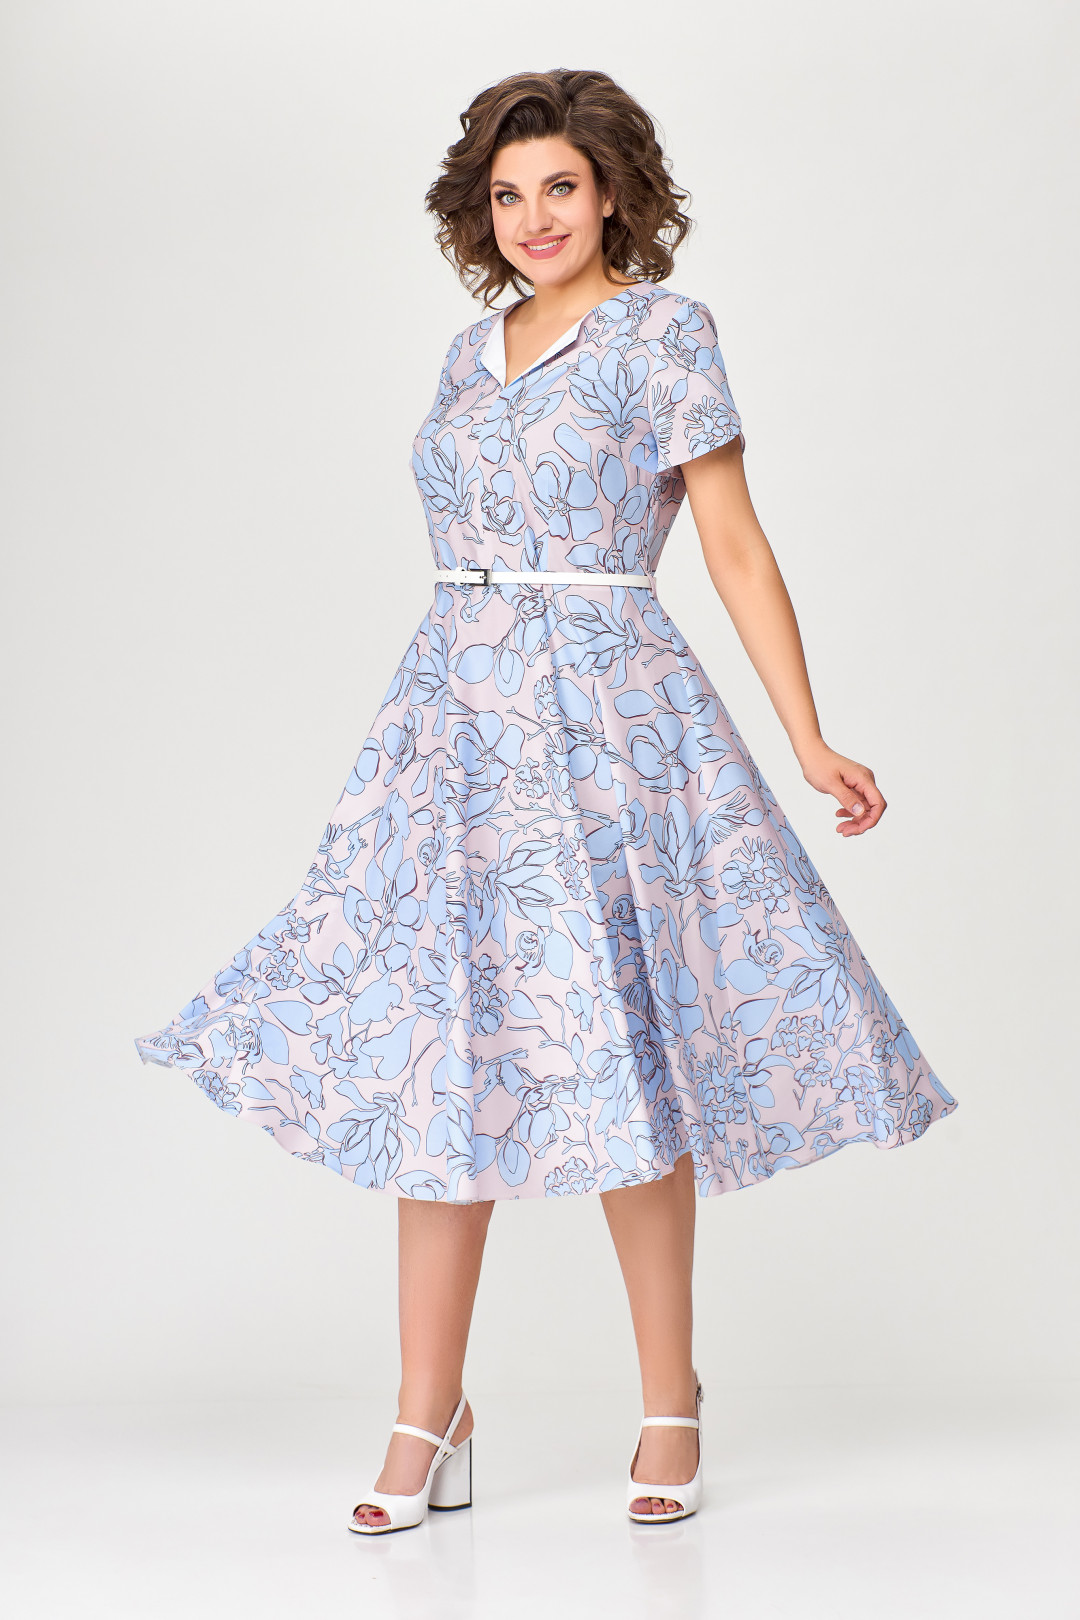 Платье Swallow 665.1 розовый в принт голубой сад